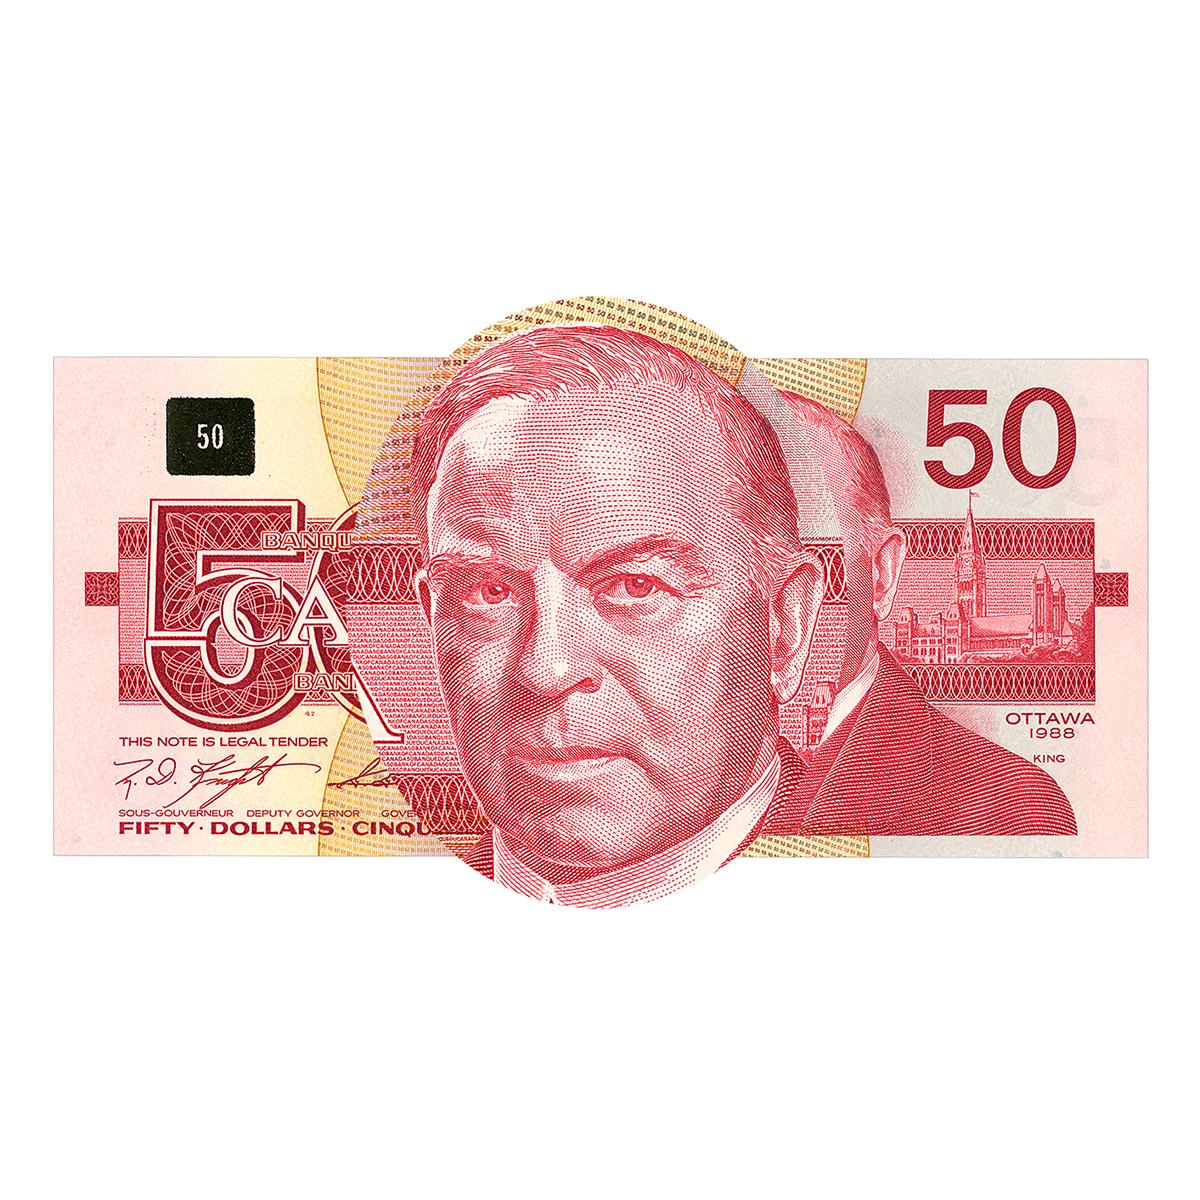 Bank note portrait, balding man in a suit.